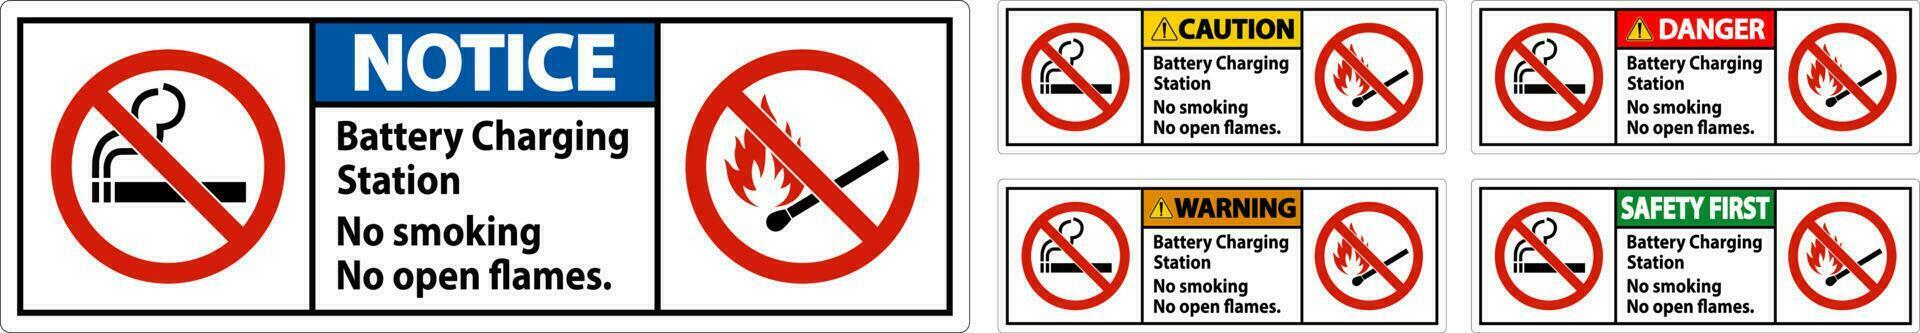 peligro firmar batería cargando estación, No de fumar, No abierto llamas vector